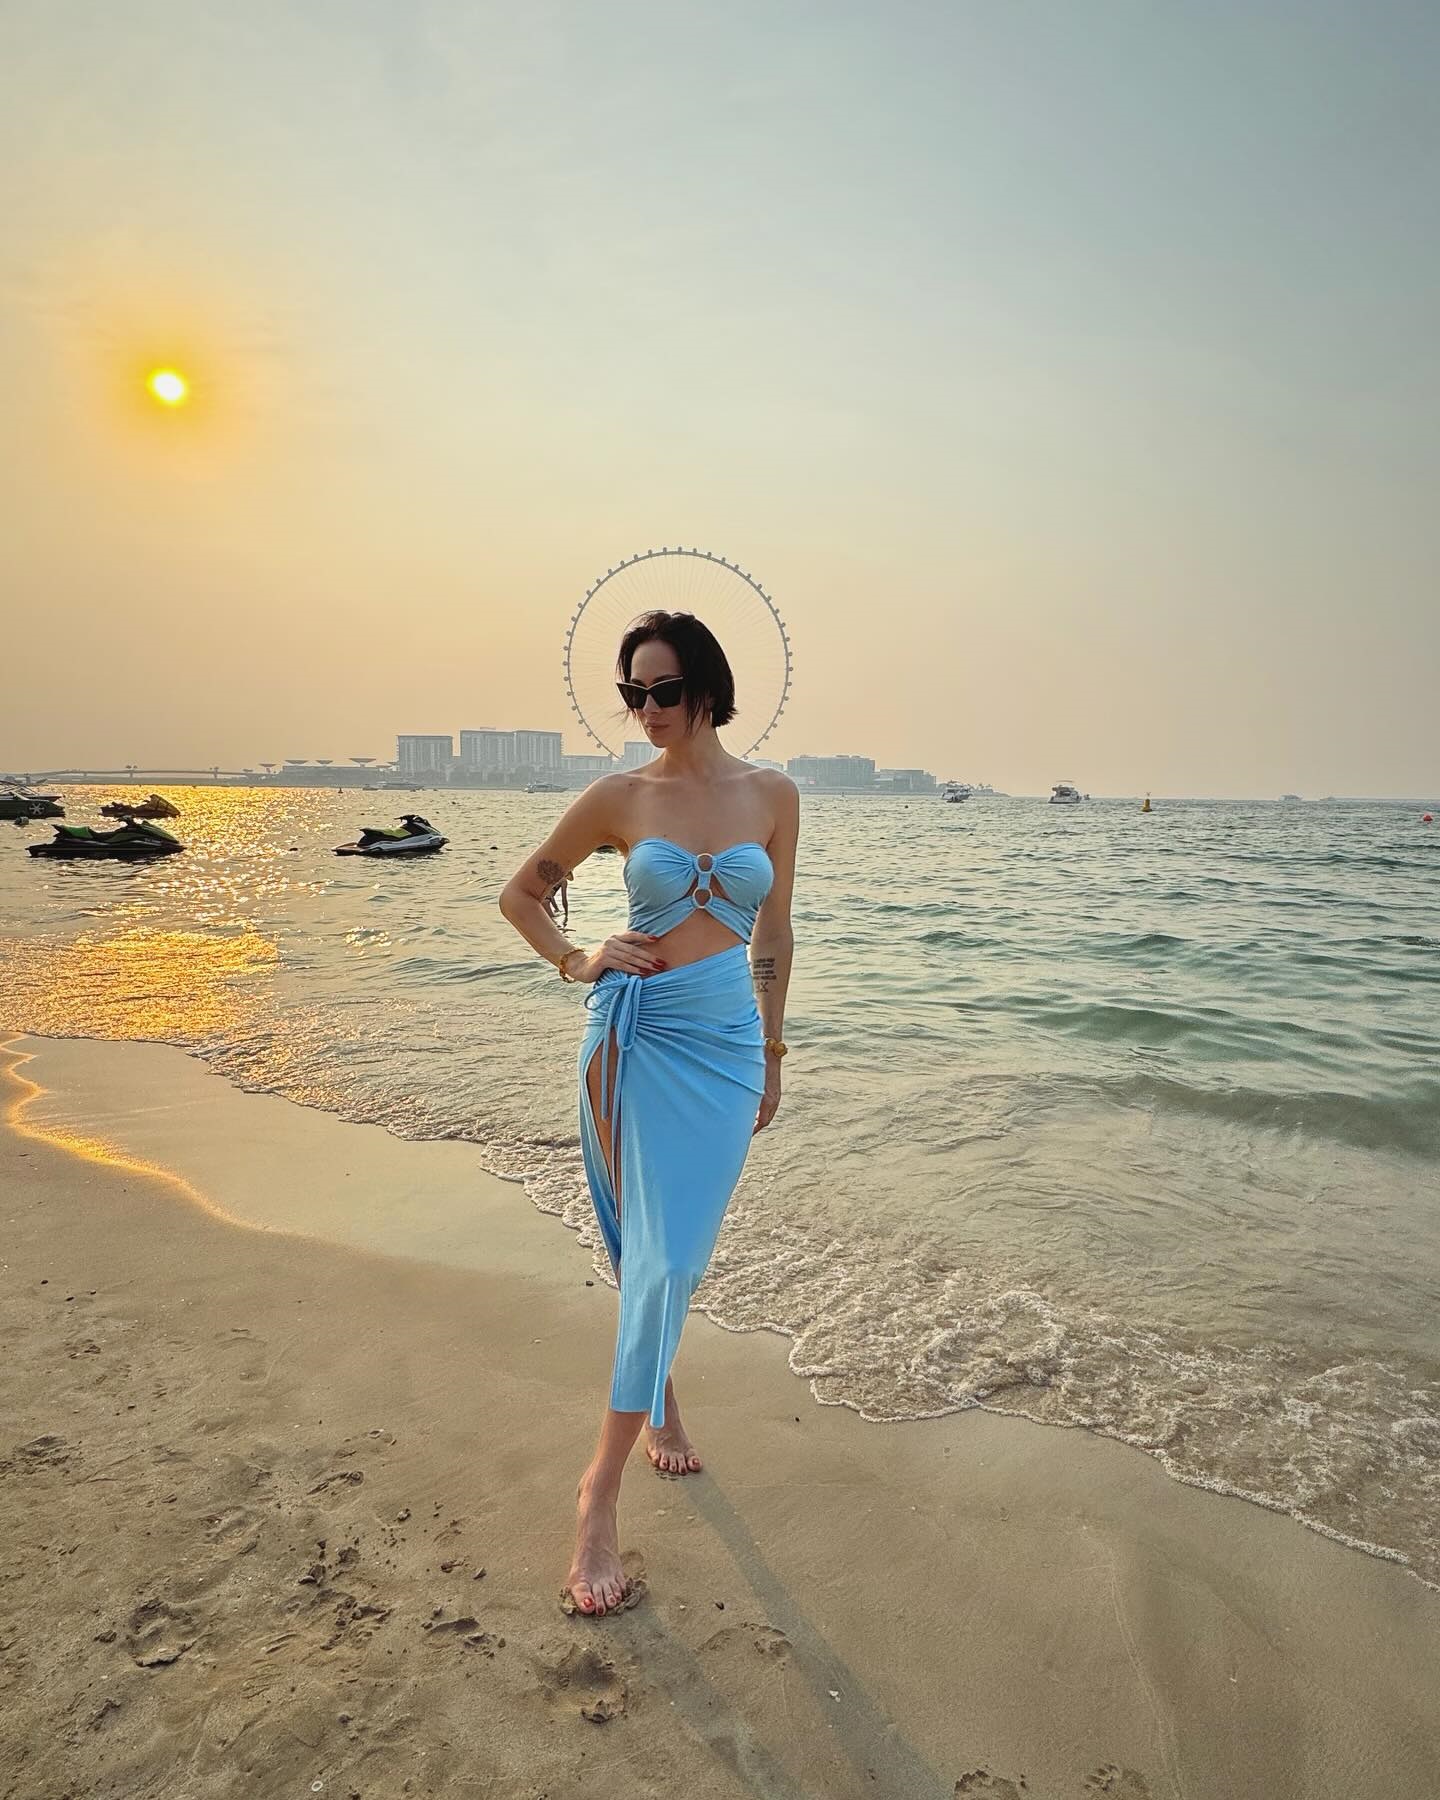 Настасья Самбурская устроила провокационную фотосессию в Дубае, напрашиваясь на «непристойное предложение». Топ пляжных фото Настасьи Самбурской, которая любит почудить 